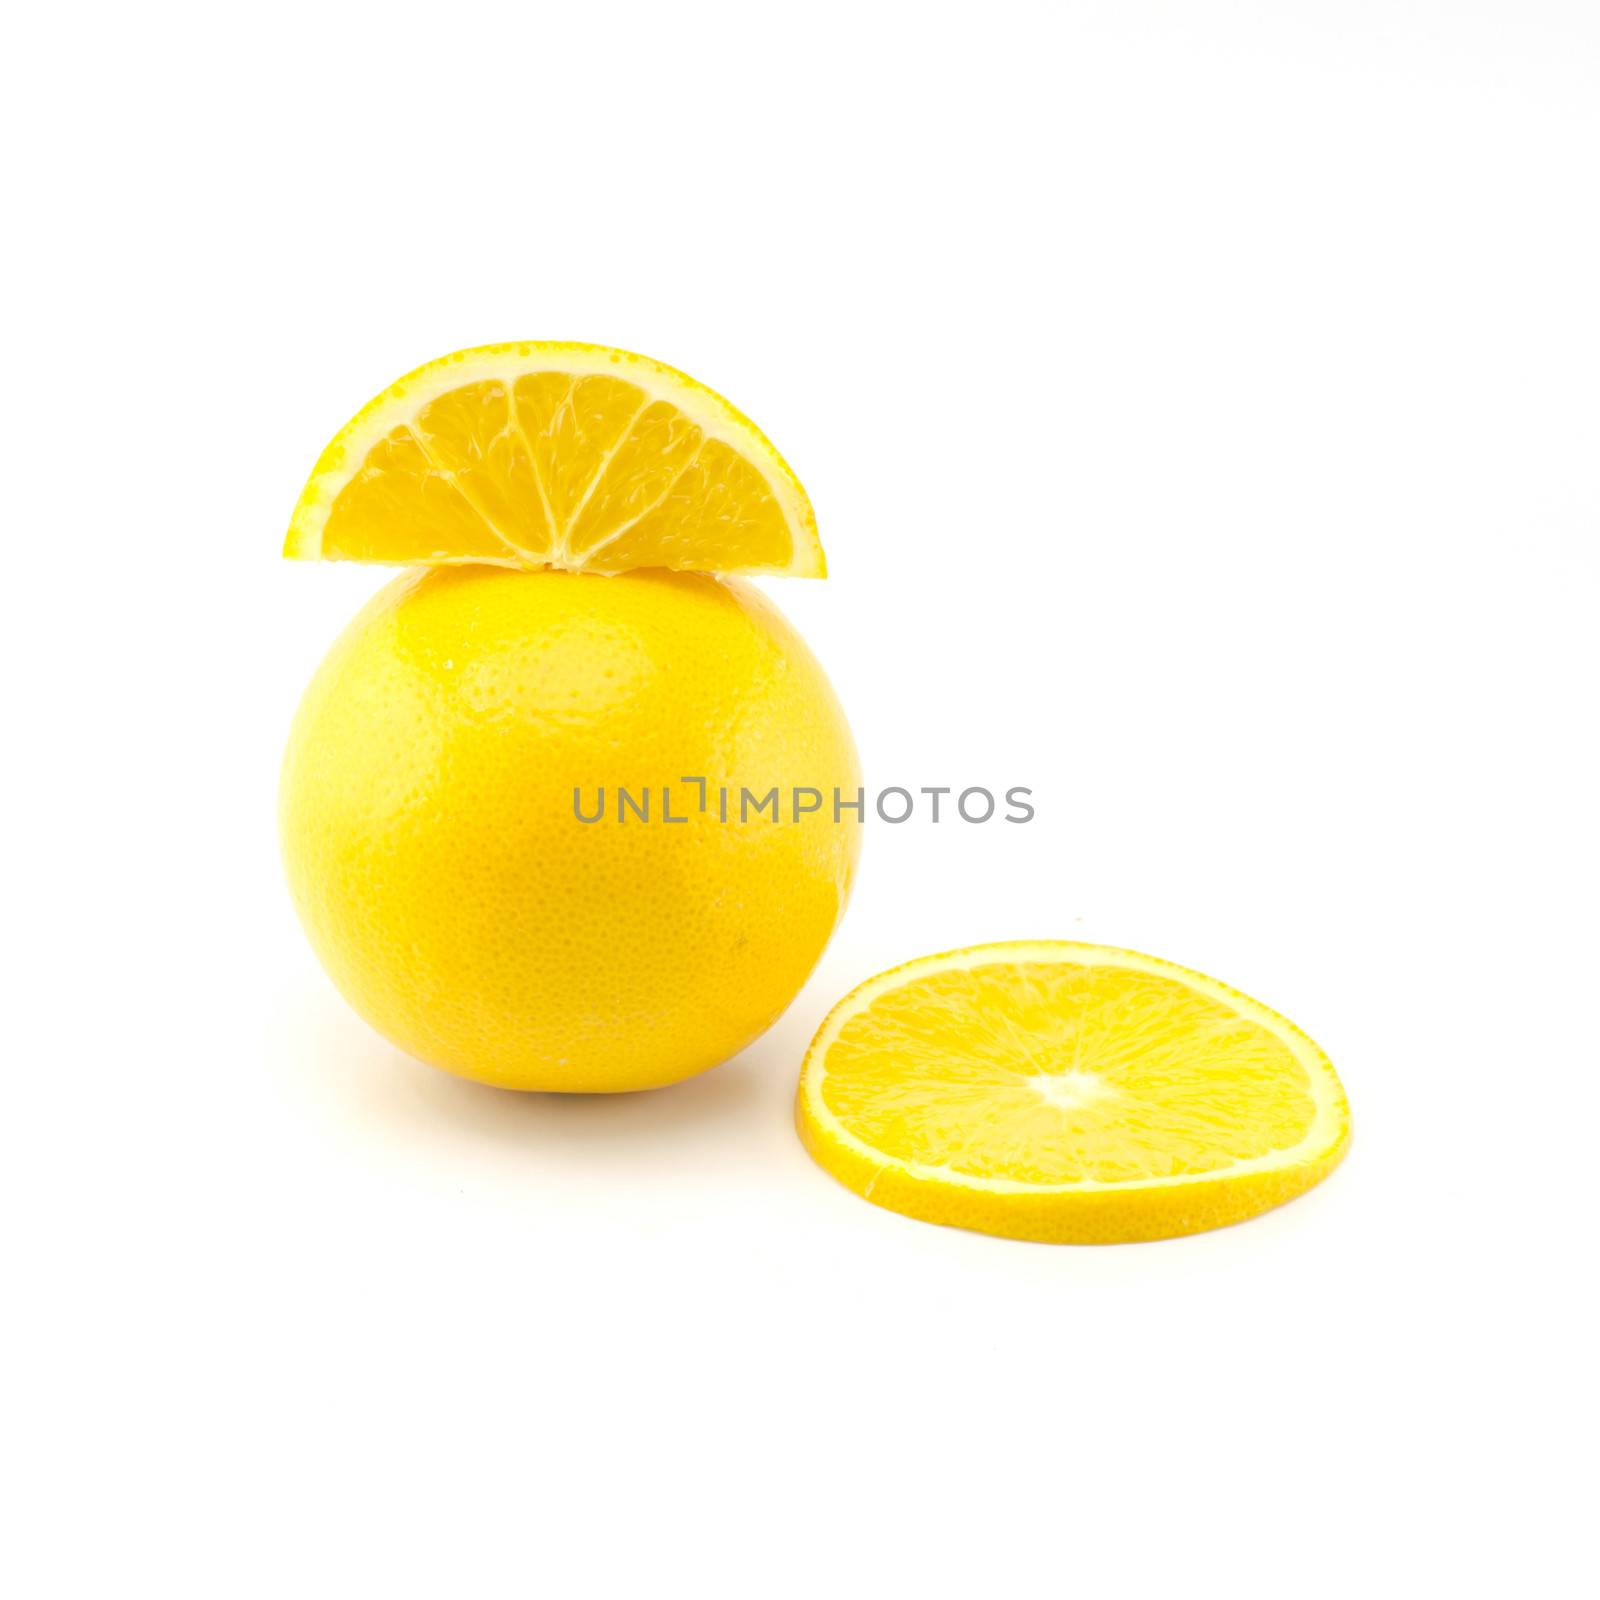 orange fruit isolated on white background